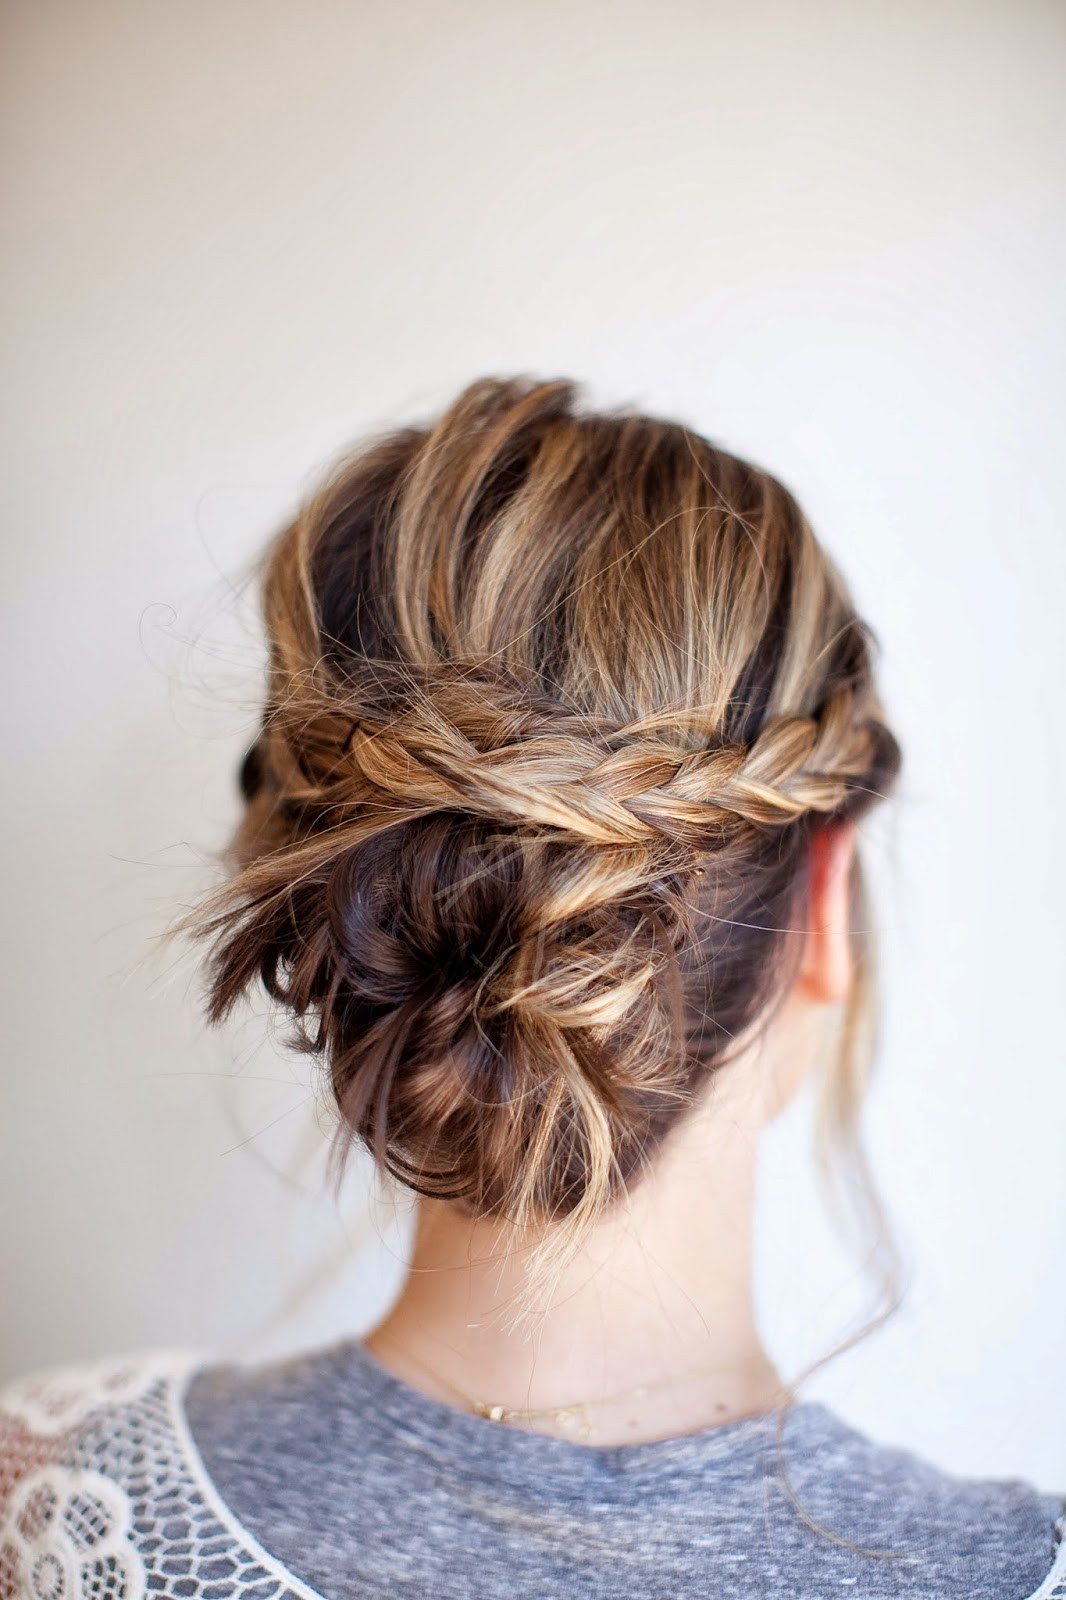 Best ideas about DIY Hair Bun
. Save or Pin TESSA RAYANNE THREE DIY Bridal Hair Tutorials Now.